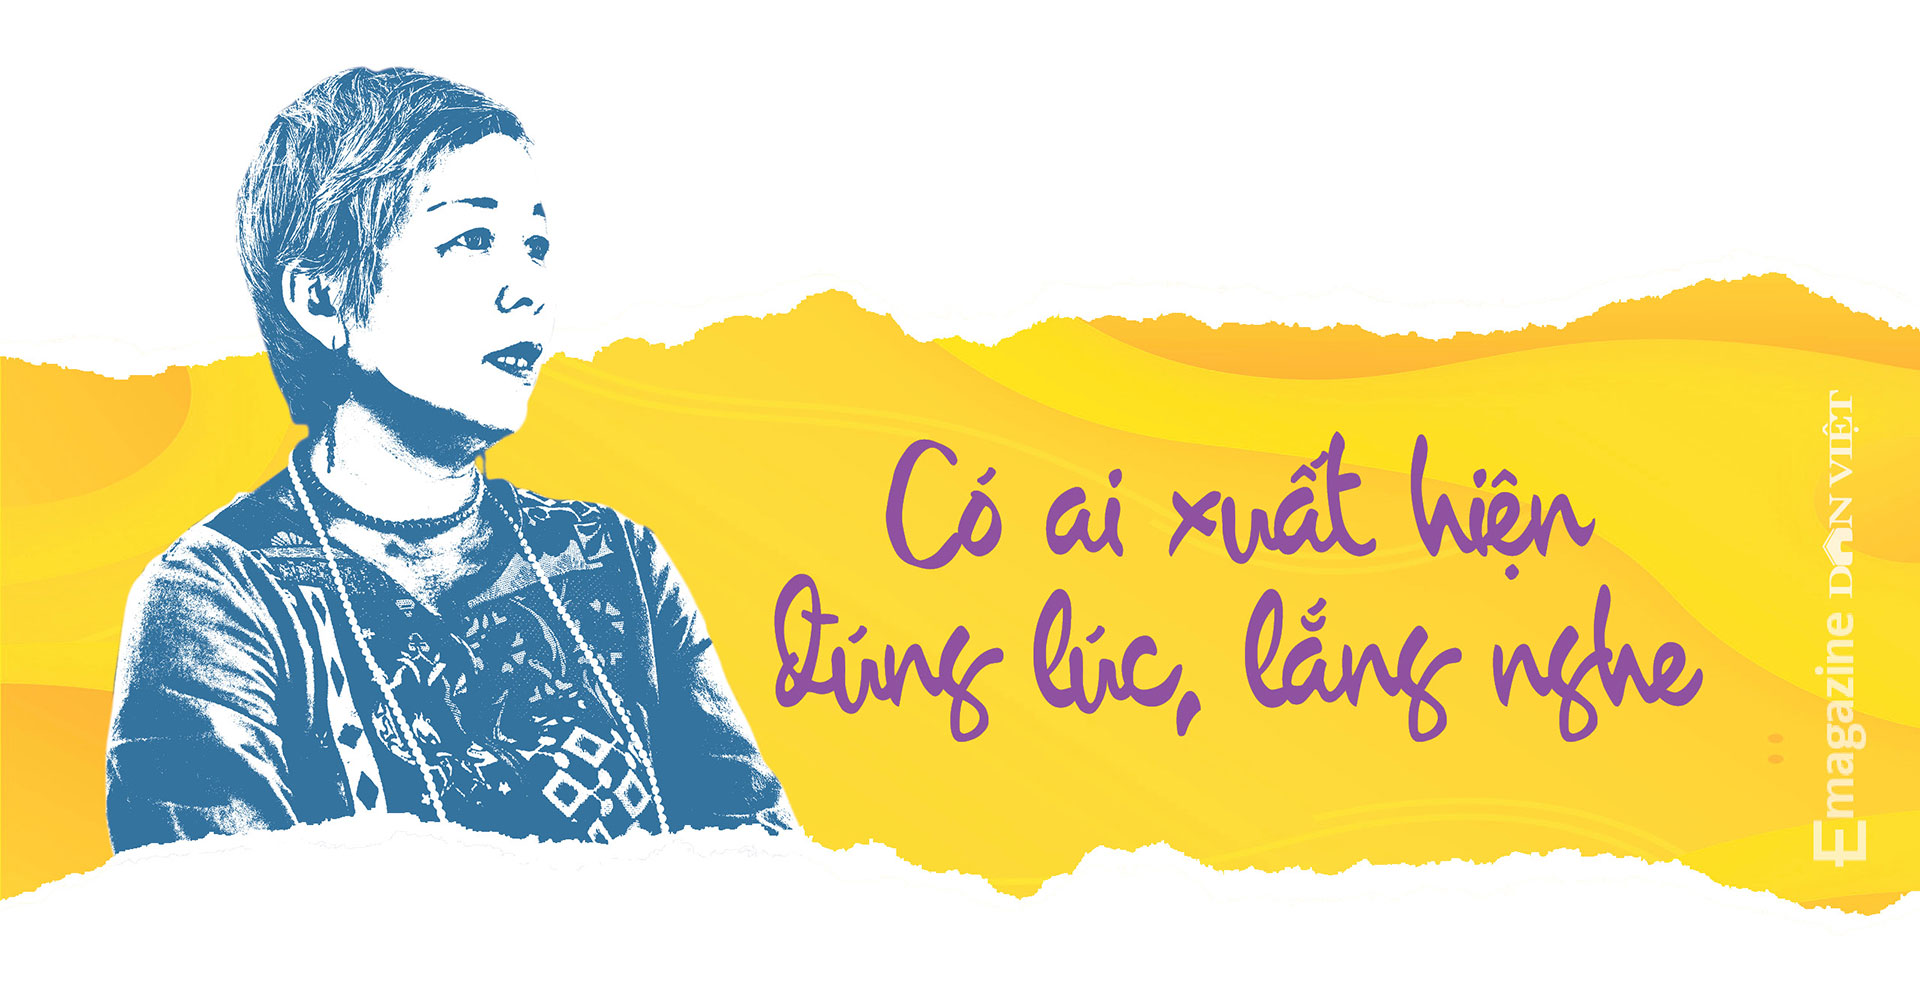 Chuyên gia về bạo lực giới và gia đình Nguyễn Vân Anh: Tình yêu là một môn học - Ảnh 2.